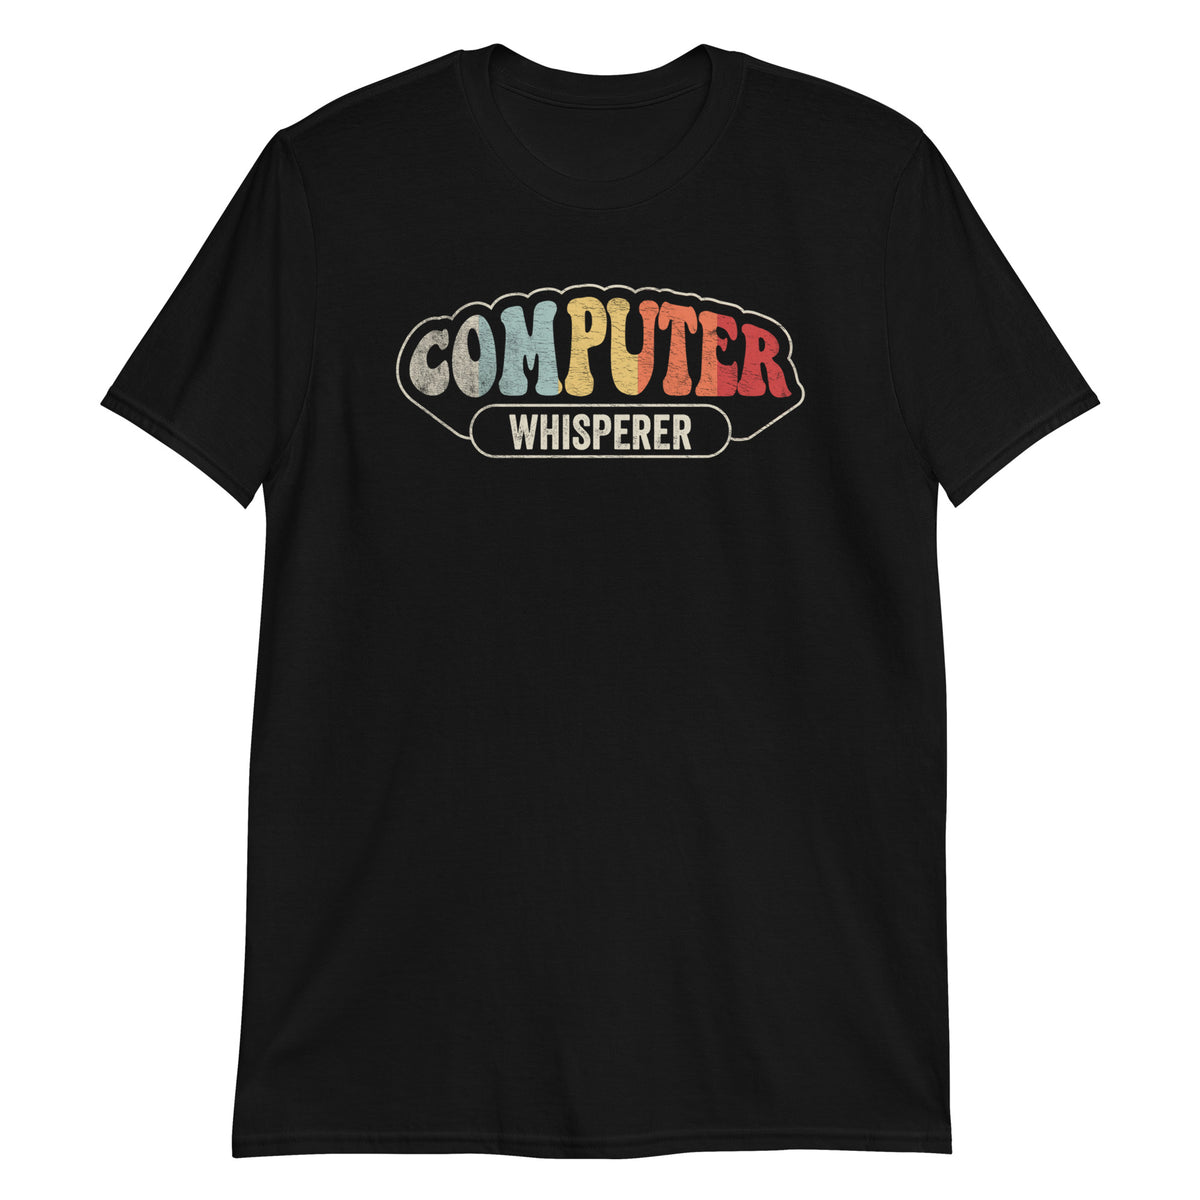 Whisperer Computer T-Shirt